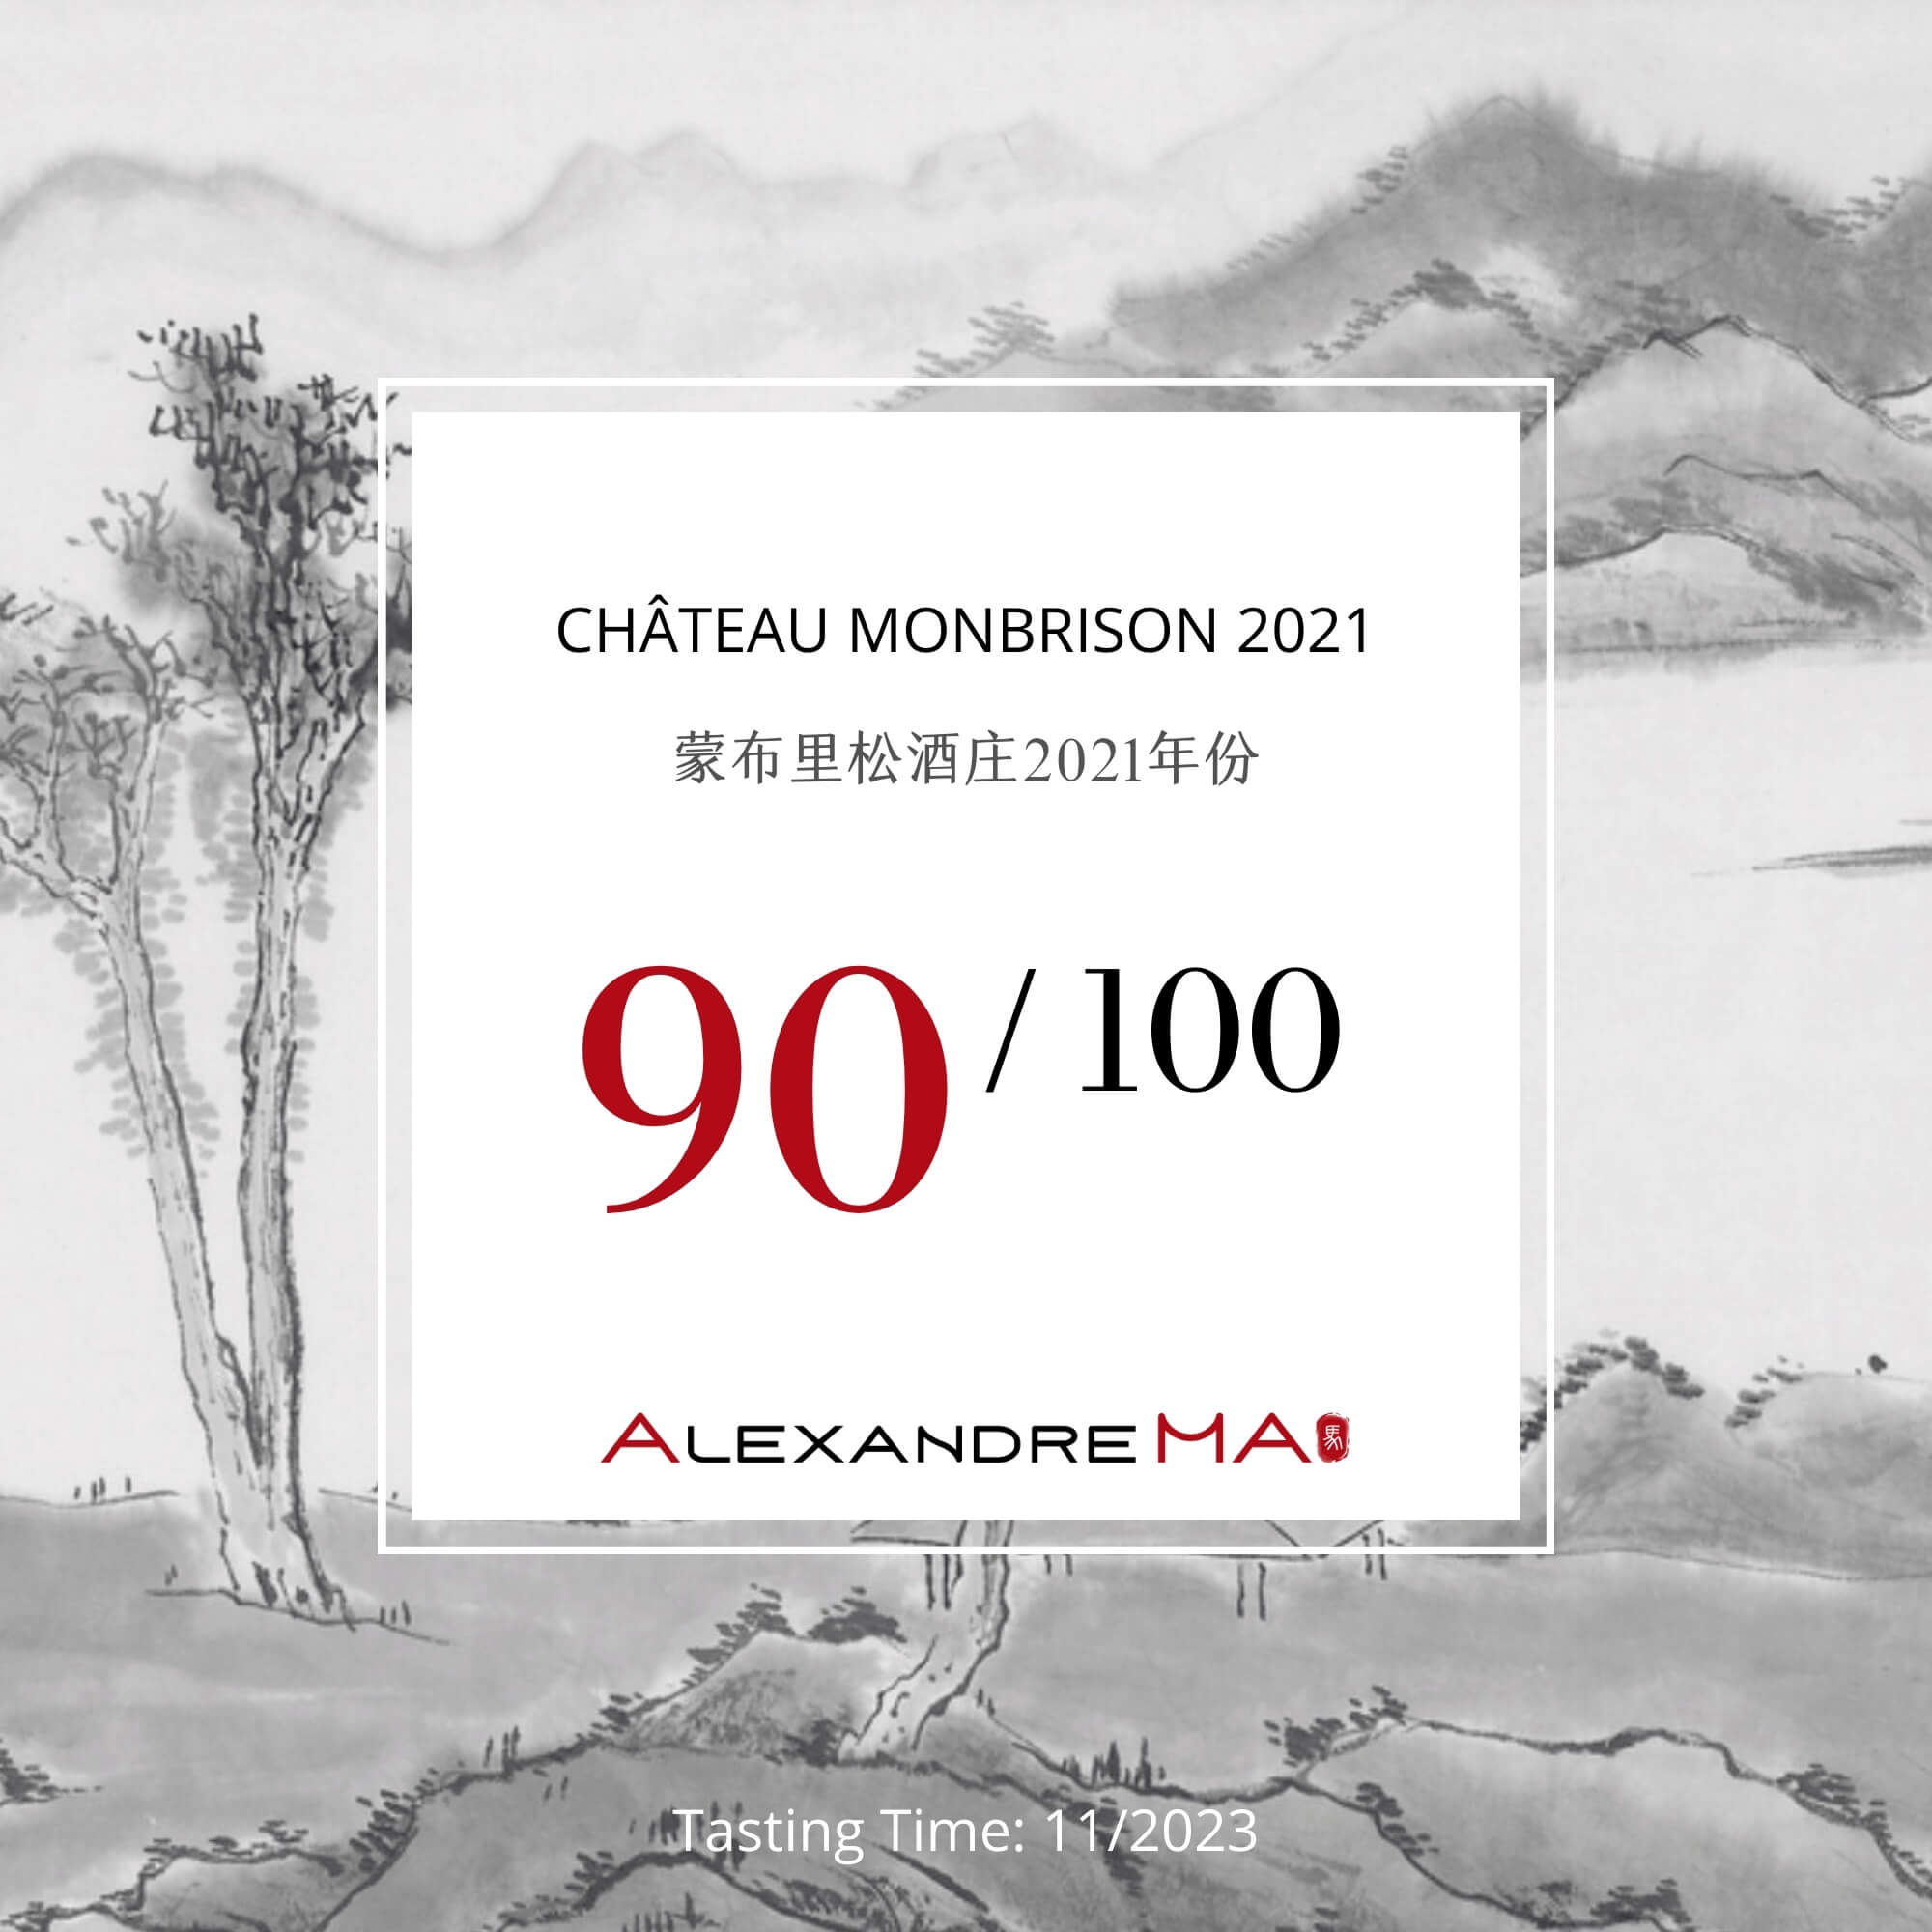 Château Monbrison 2021 - Alexandre MA